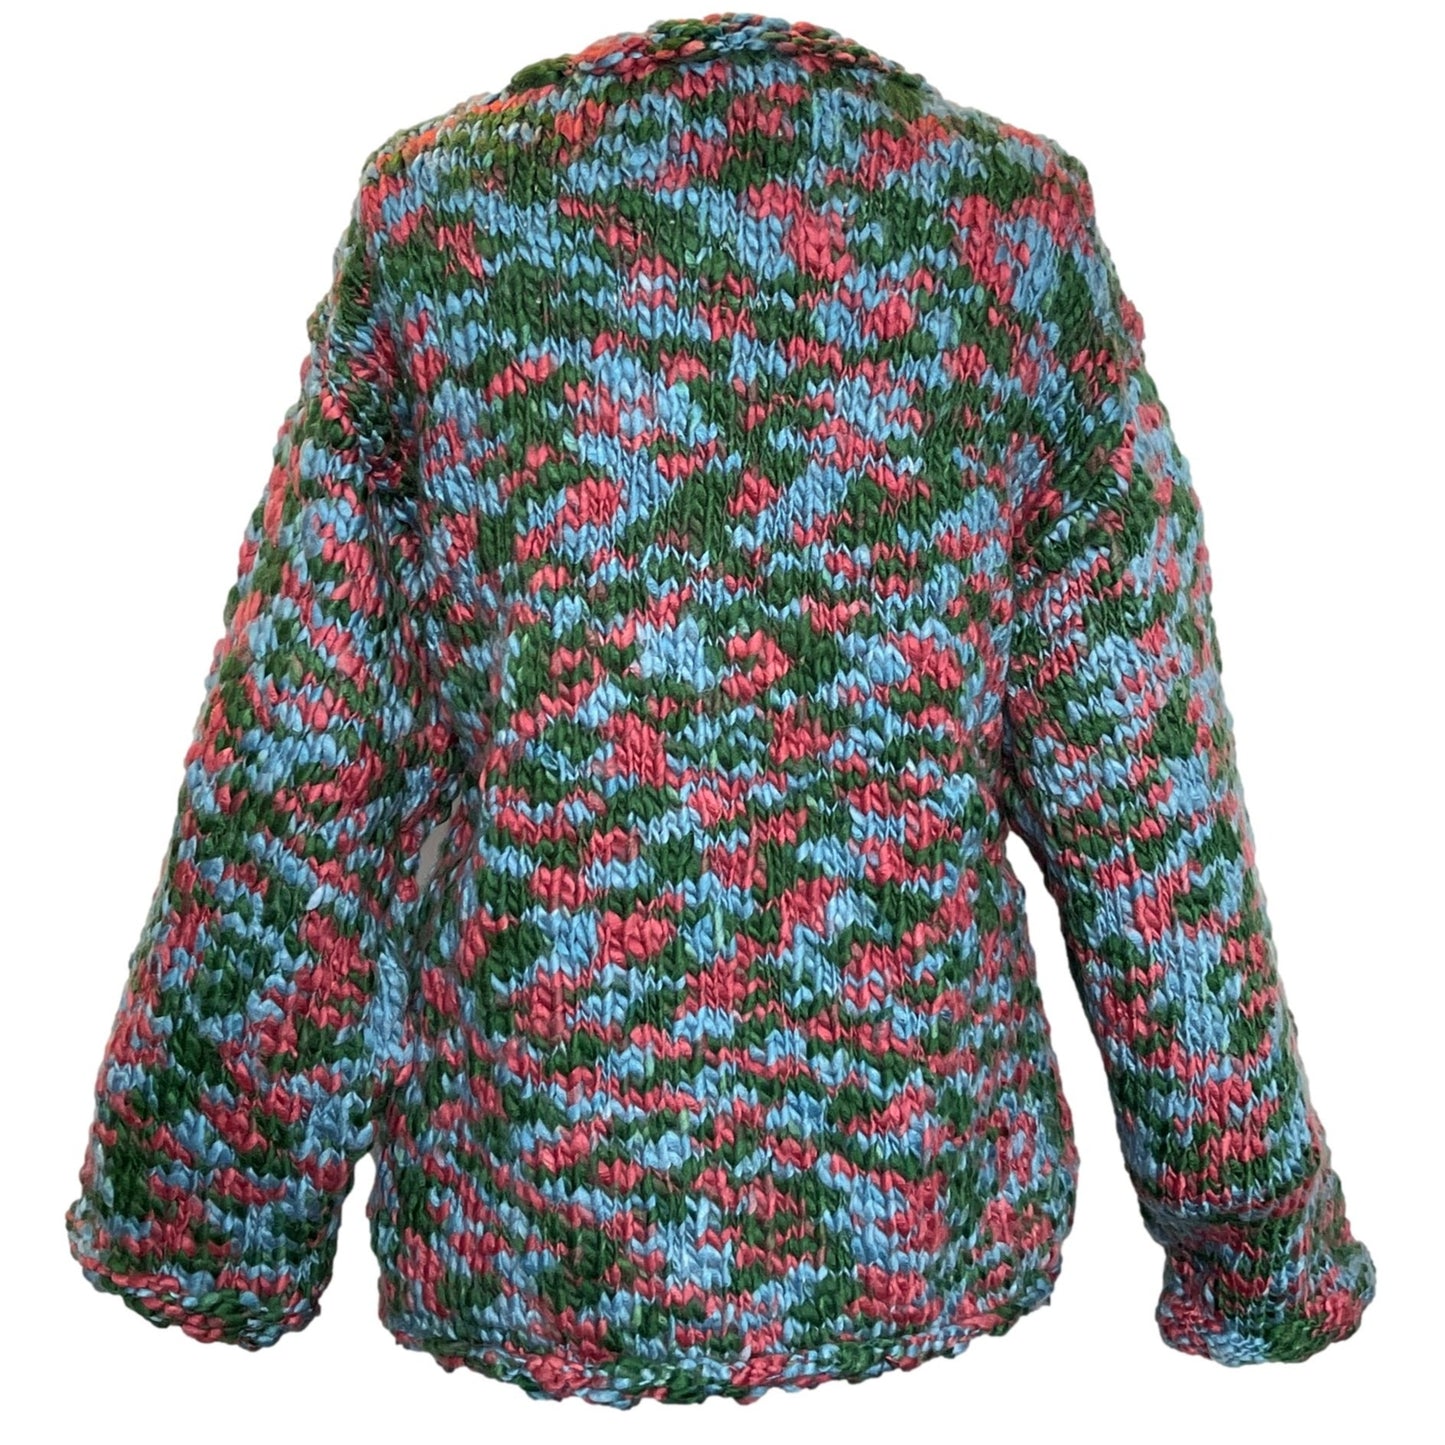 Adini Bulky Cardigan Sweater